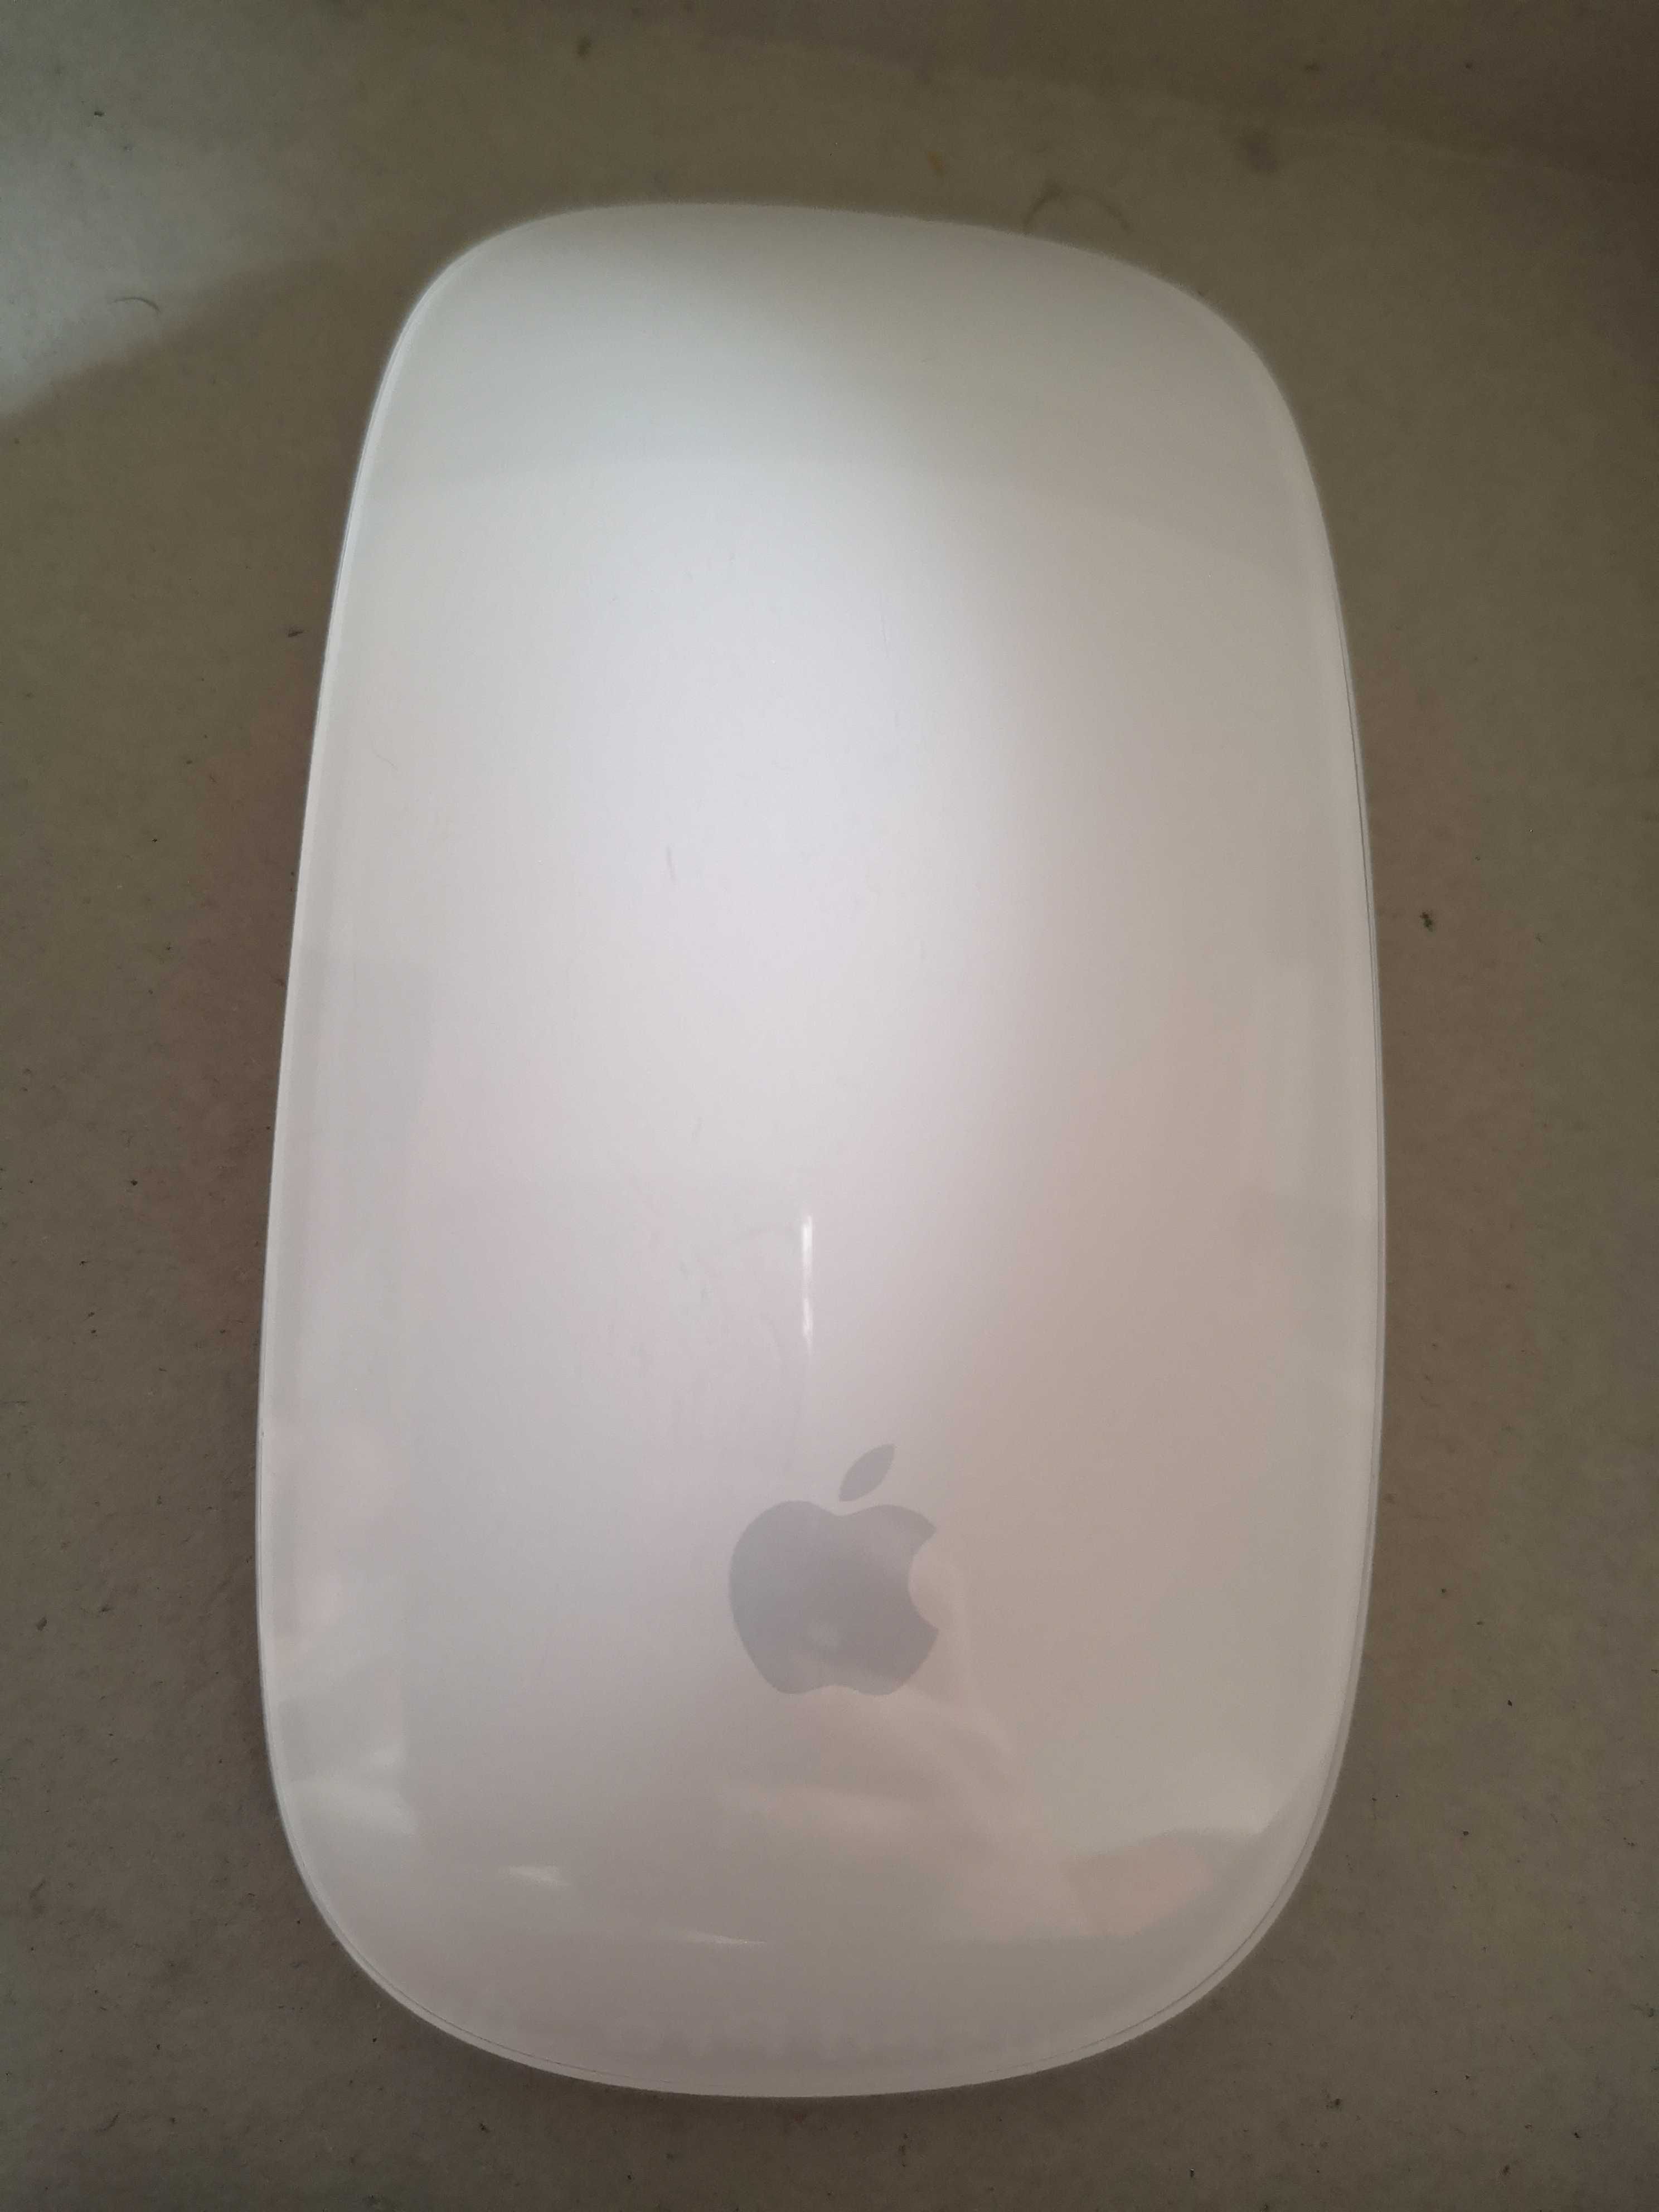 Rato Apple usado